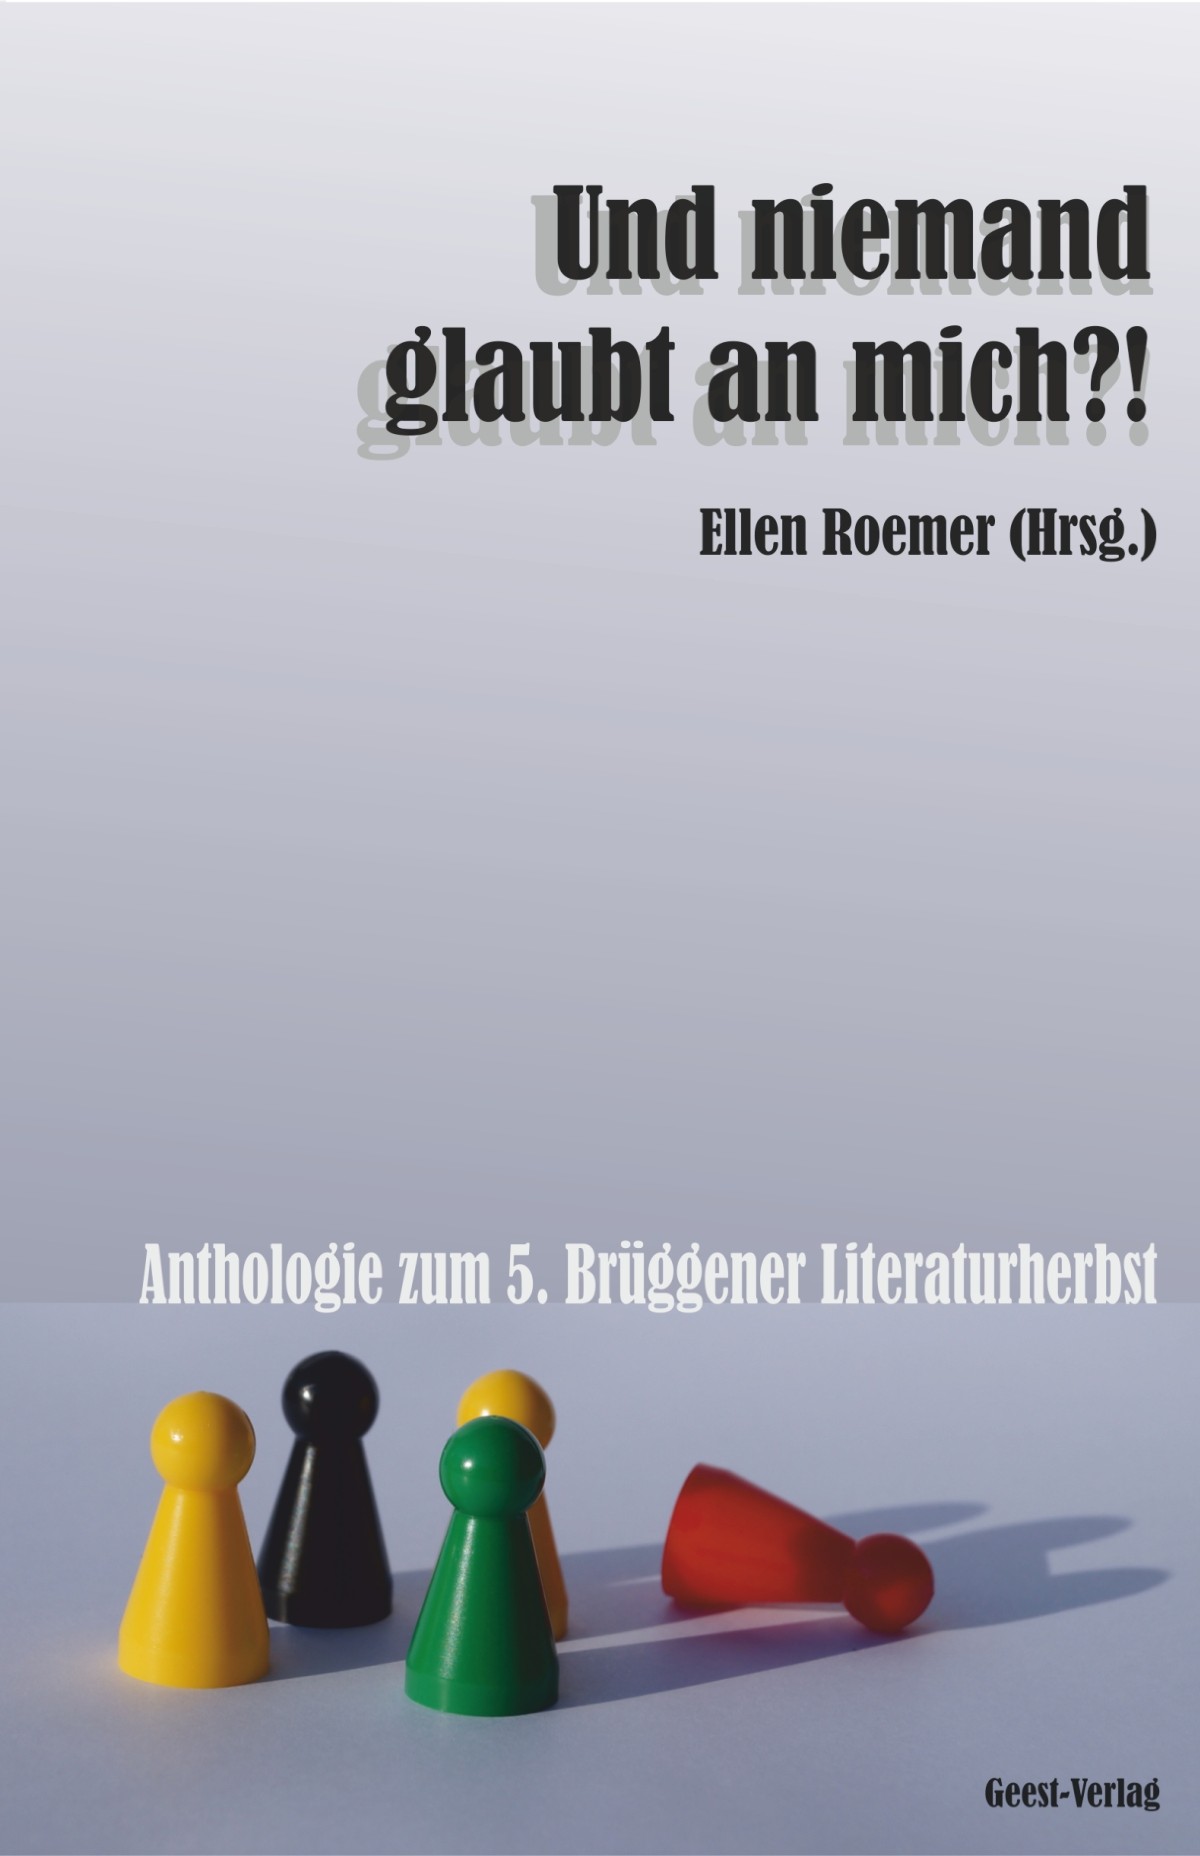 Hannelore Furch: Programm für einen Arbeitslosen (Gedicht). In: Und niemand glaubt an mich?. Ellen Roemer (Hrsg.). Anthologie zum 5. Brüggener Literaturherbst. Vechta 2014 (Geest-Verlag). S. 217.